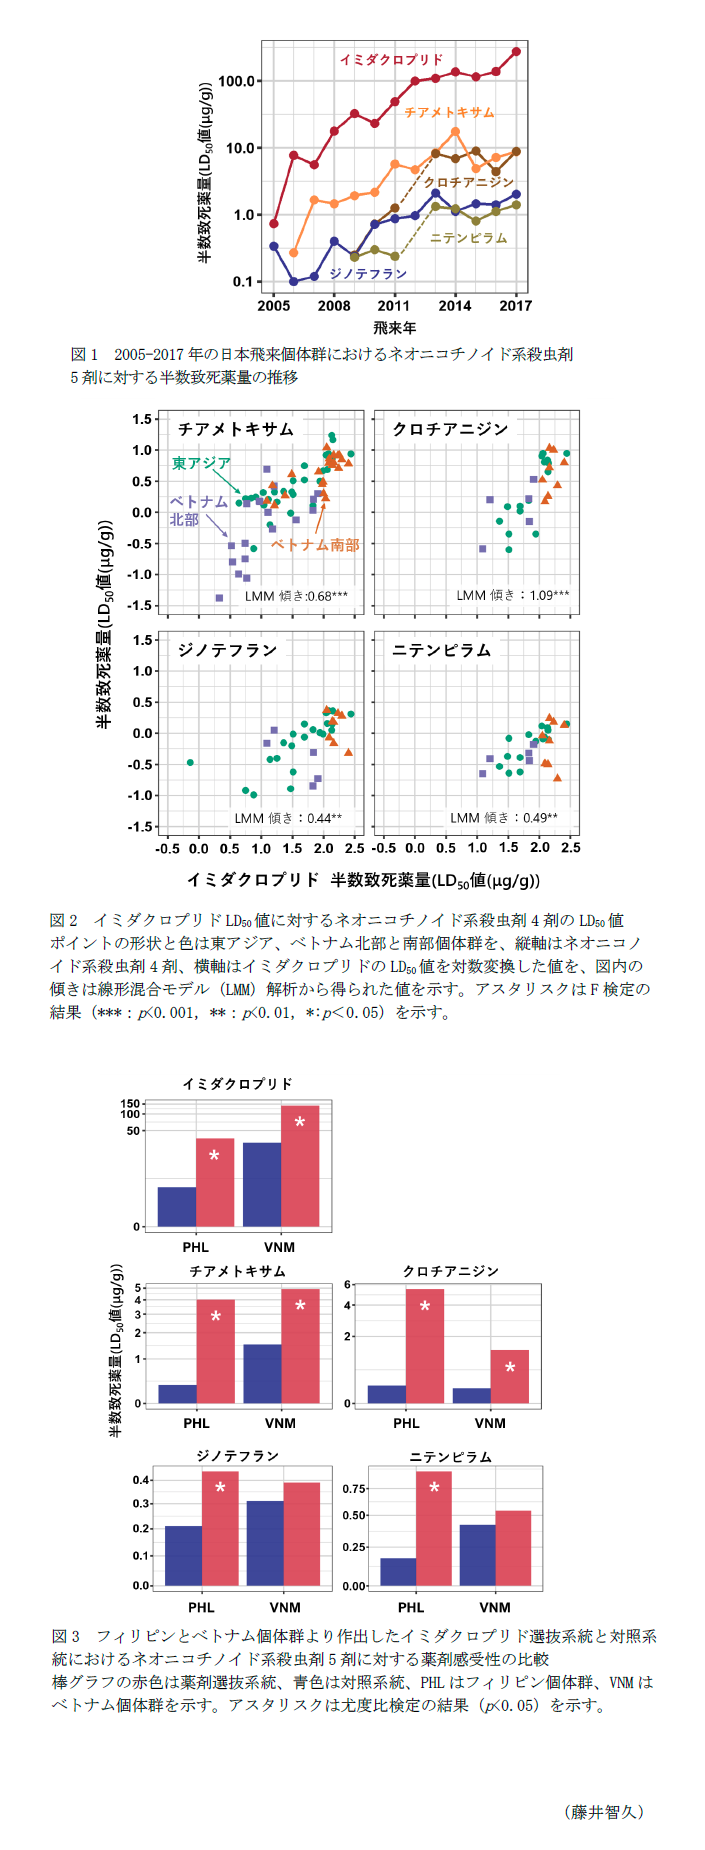 図1 2005-2017年の日本飛来個体群におけるネオニコチノイド系殺虫剤5剤に対する半数致死薬量の推移,図2 イミダクロプリドLD50値に対するネオニコチノイド系殺虫剤4剤のLD50値,図3 フィリピンとベトナム個体群より作出したイミダクロプリド選抜系統と対照系統におけるネオニコチノイド系殺虫剤5剤に対する薬剤感受性の比較